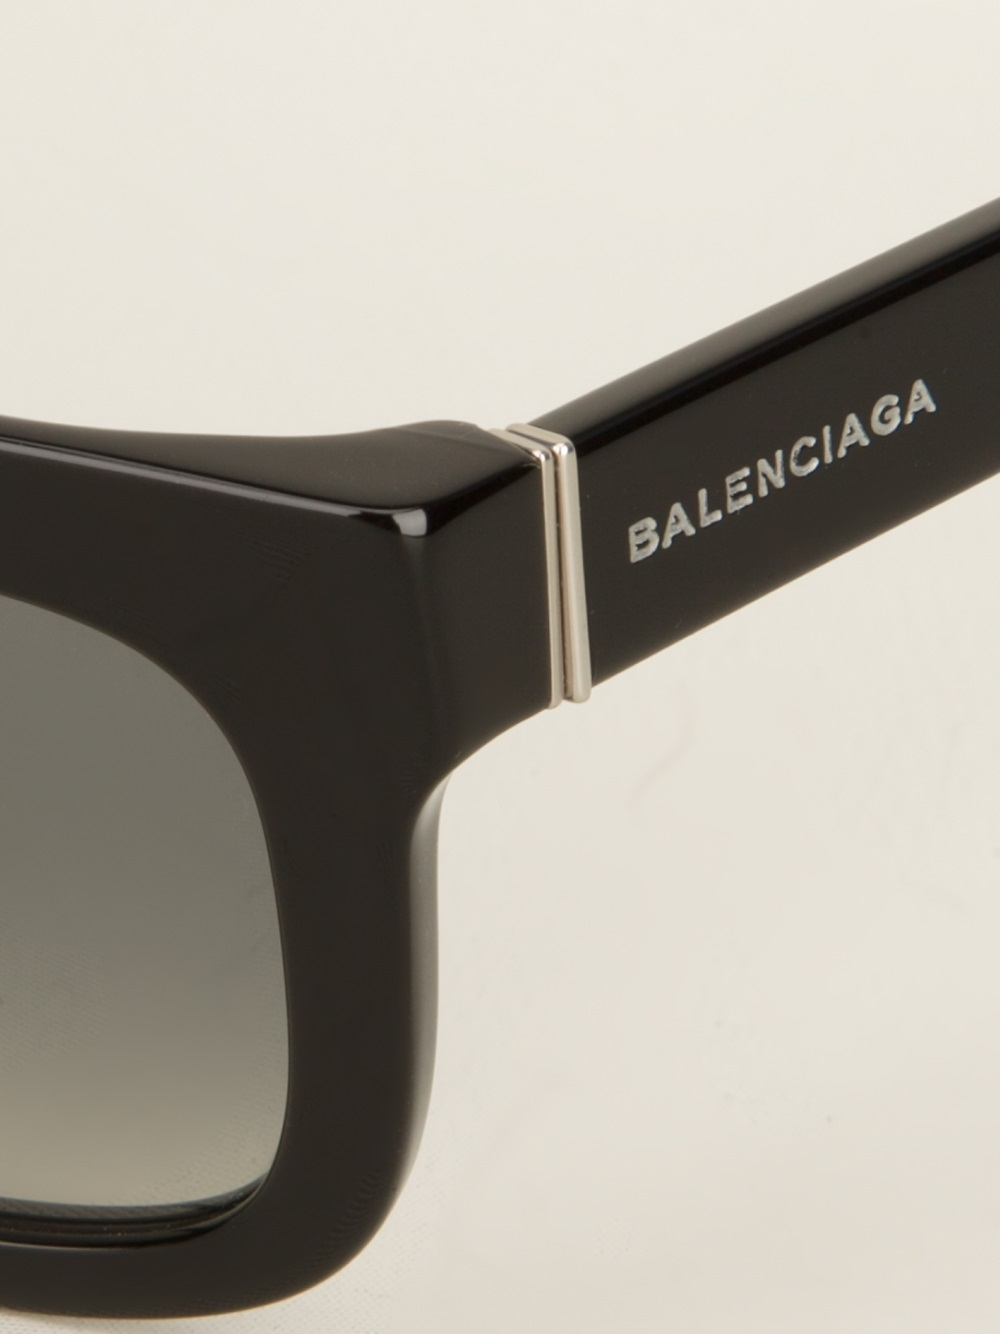 Balenciaga Square Frame Sunglasses in Black for Men - Lyst